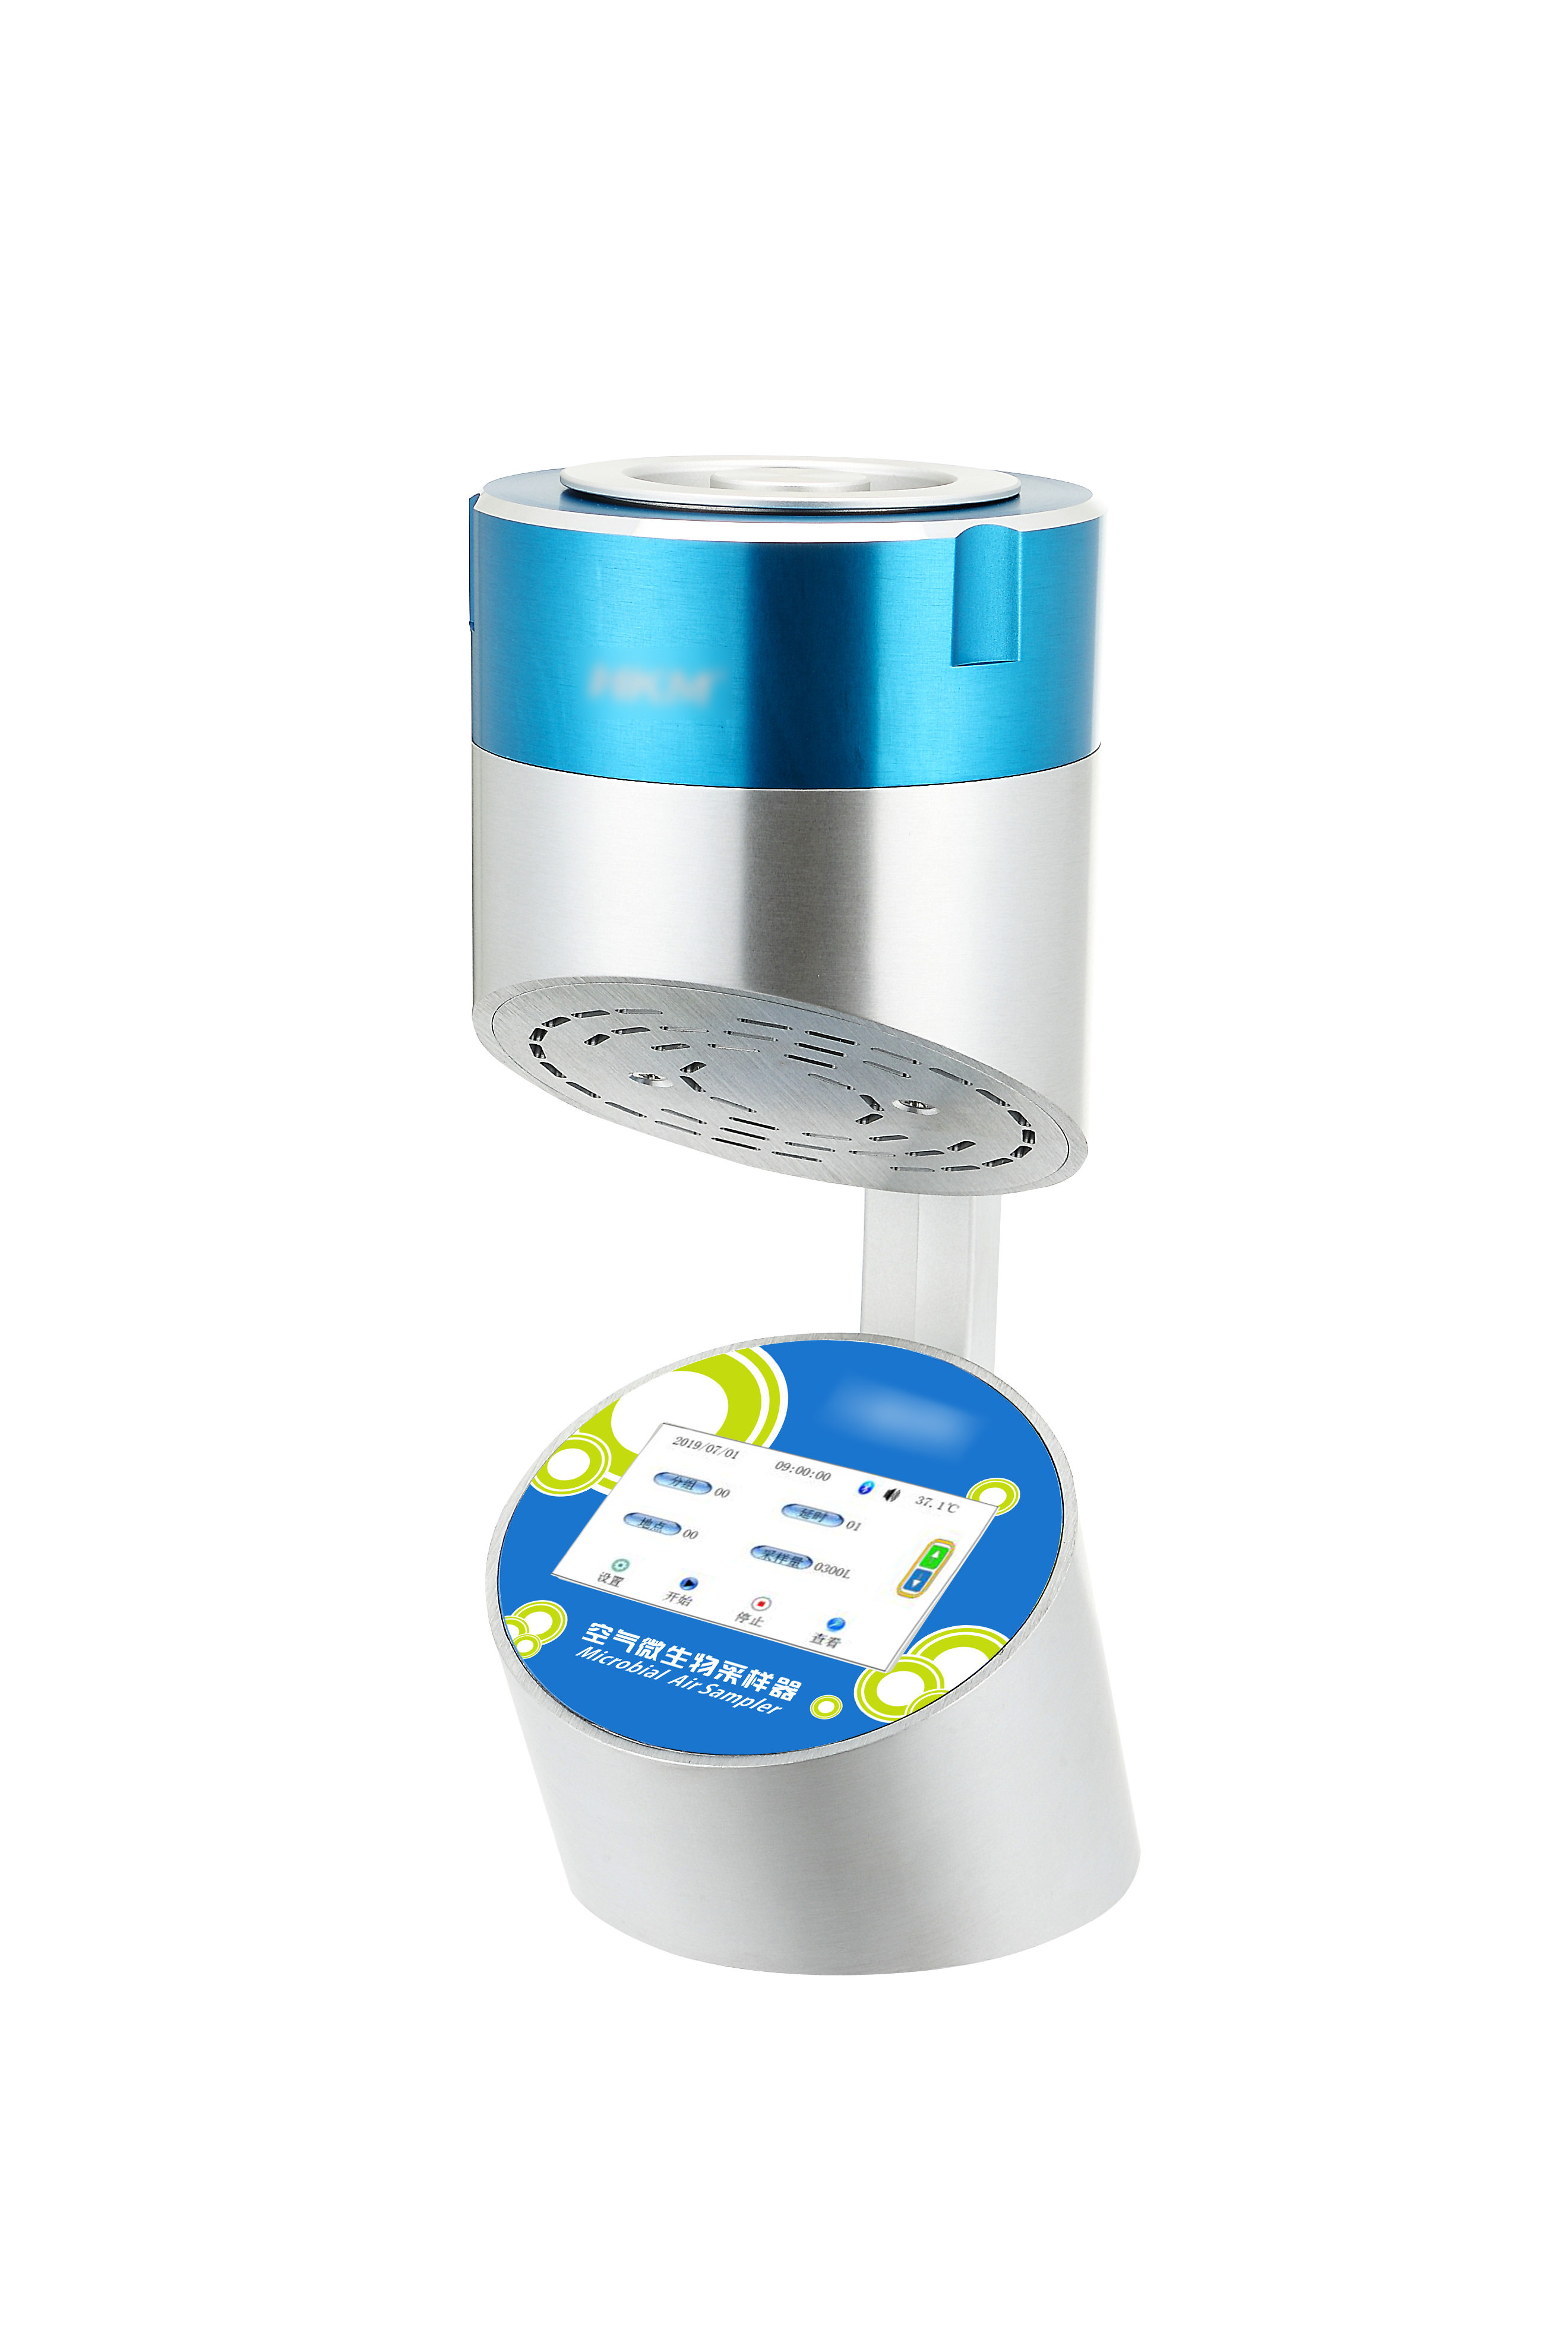 空气浮游微生物采样器（空气微生物采样器）HKM-ⅢA-100 触摸屏 蓝牙 PC 版